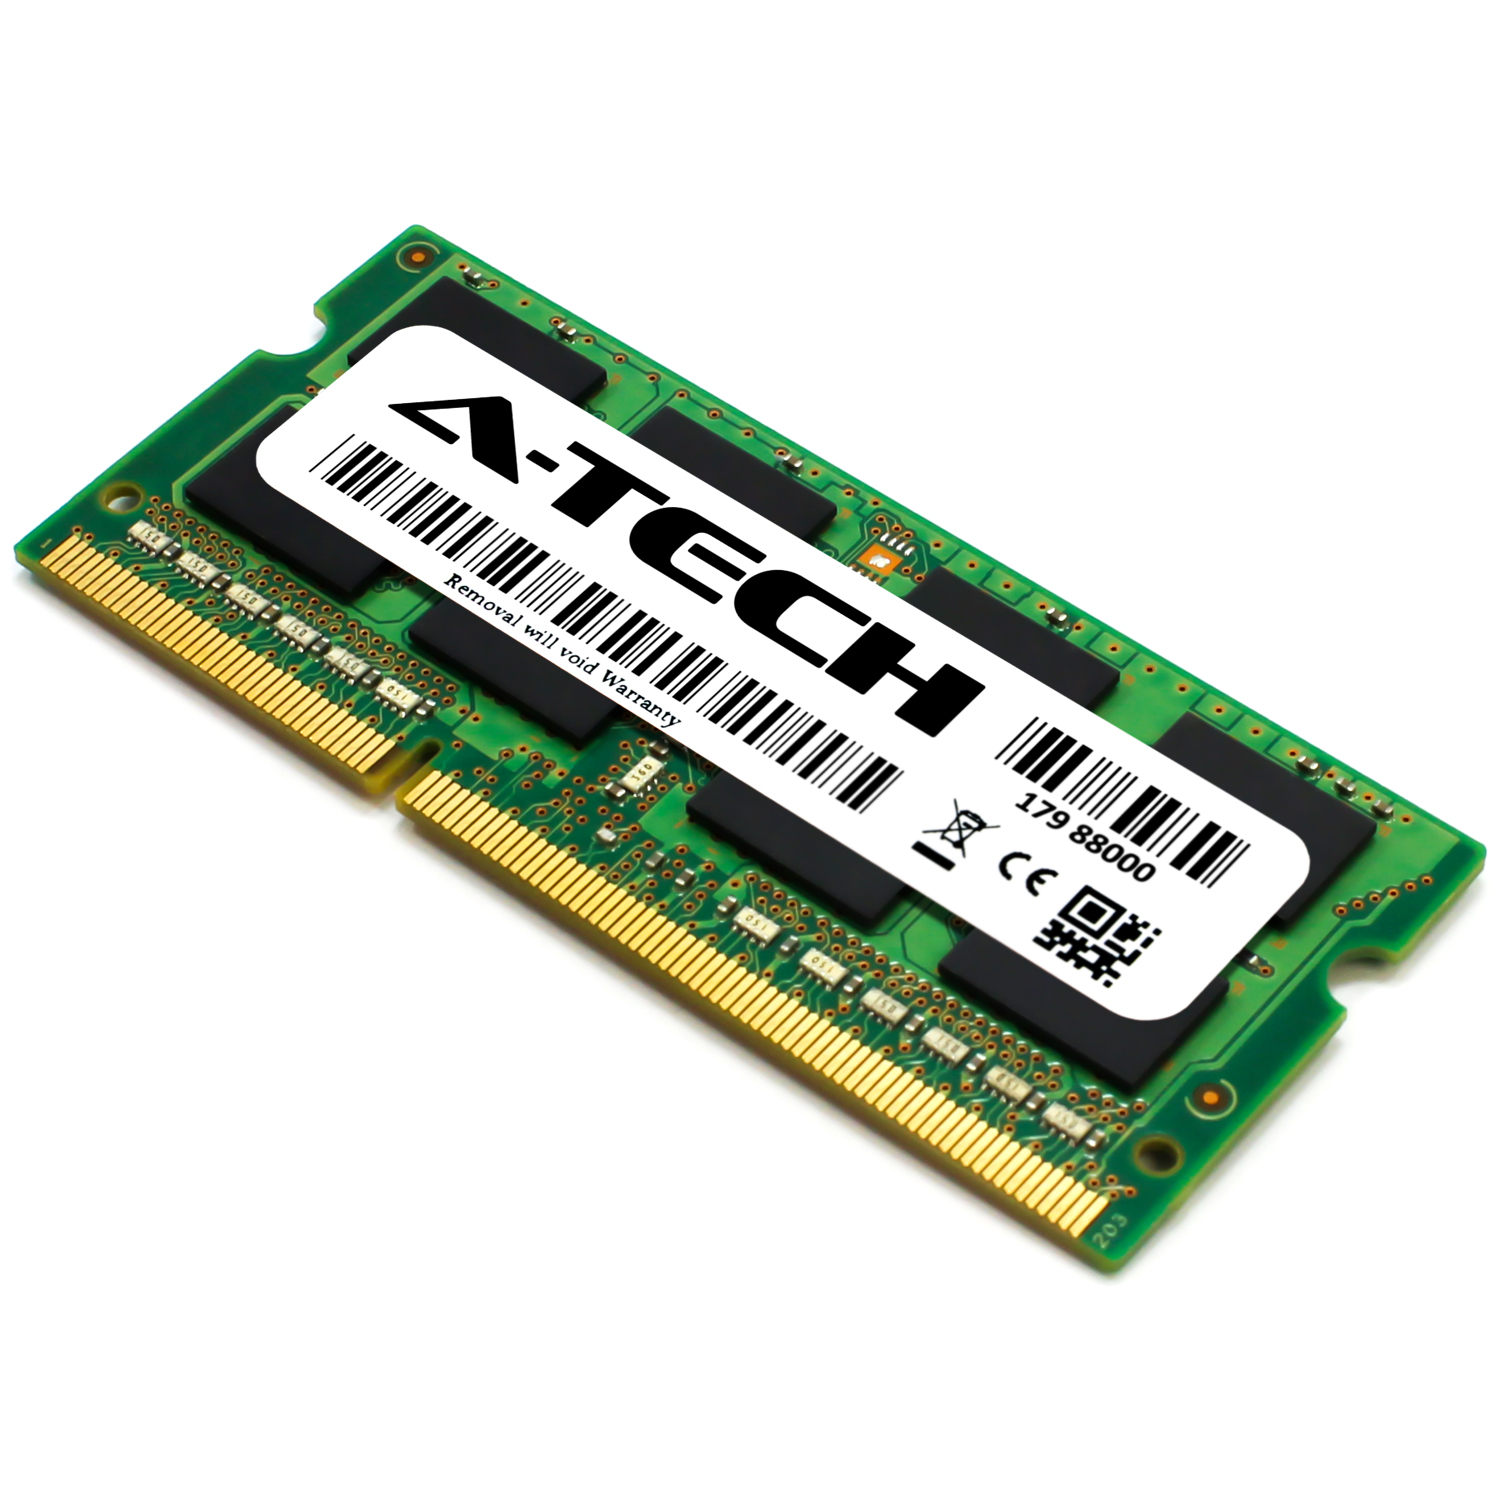 8GB PC3-12800 DDR3 1600 MHz SO-DIMM 1.35V Memory RAM for ZOTAC ZBOX EN760  Plus | eBay